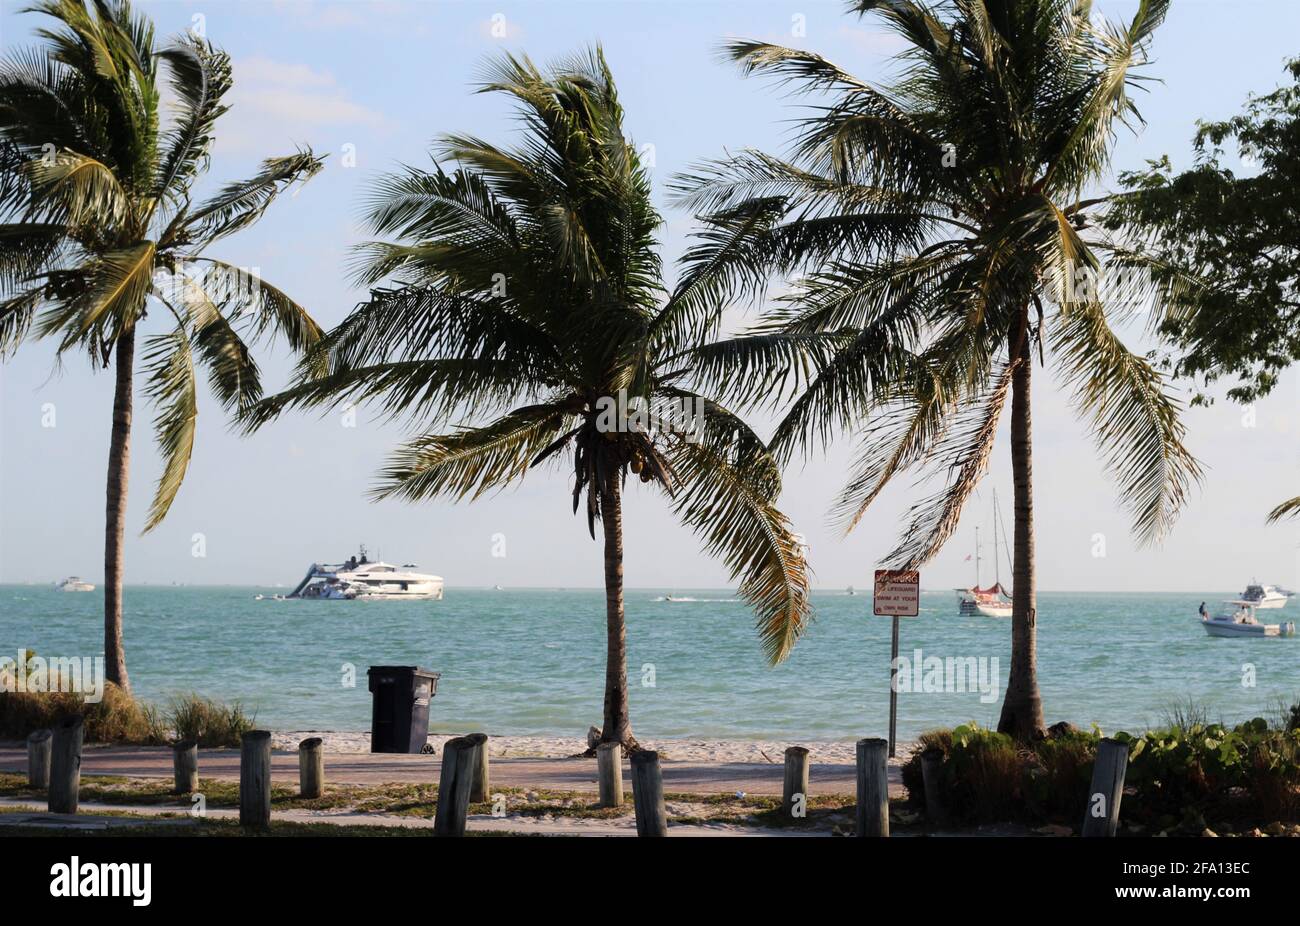 Belle journée ensoleillée à Key Biscayne, Floride. Grands palmiers avec fond d'océan. Vue sur la rue. Banque D'Images